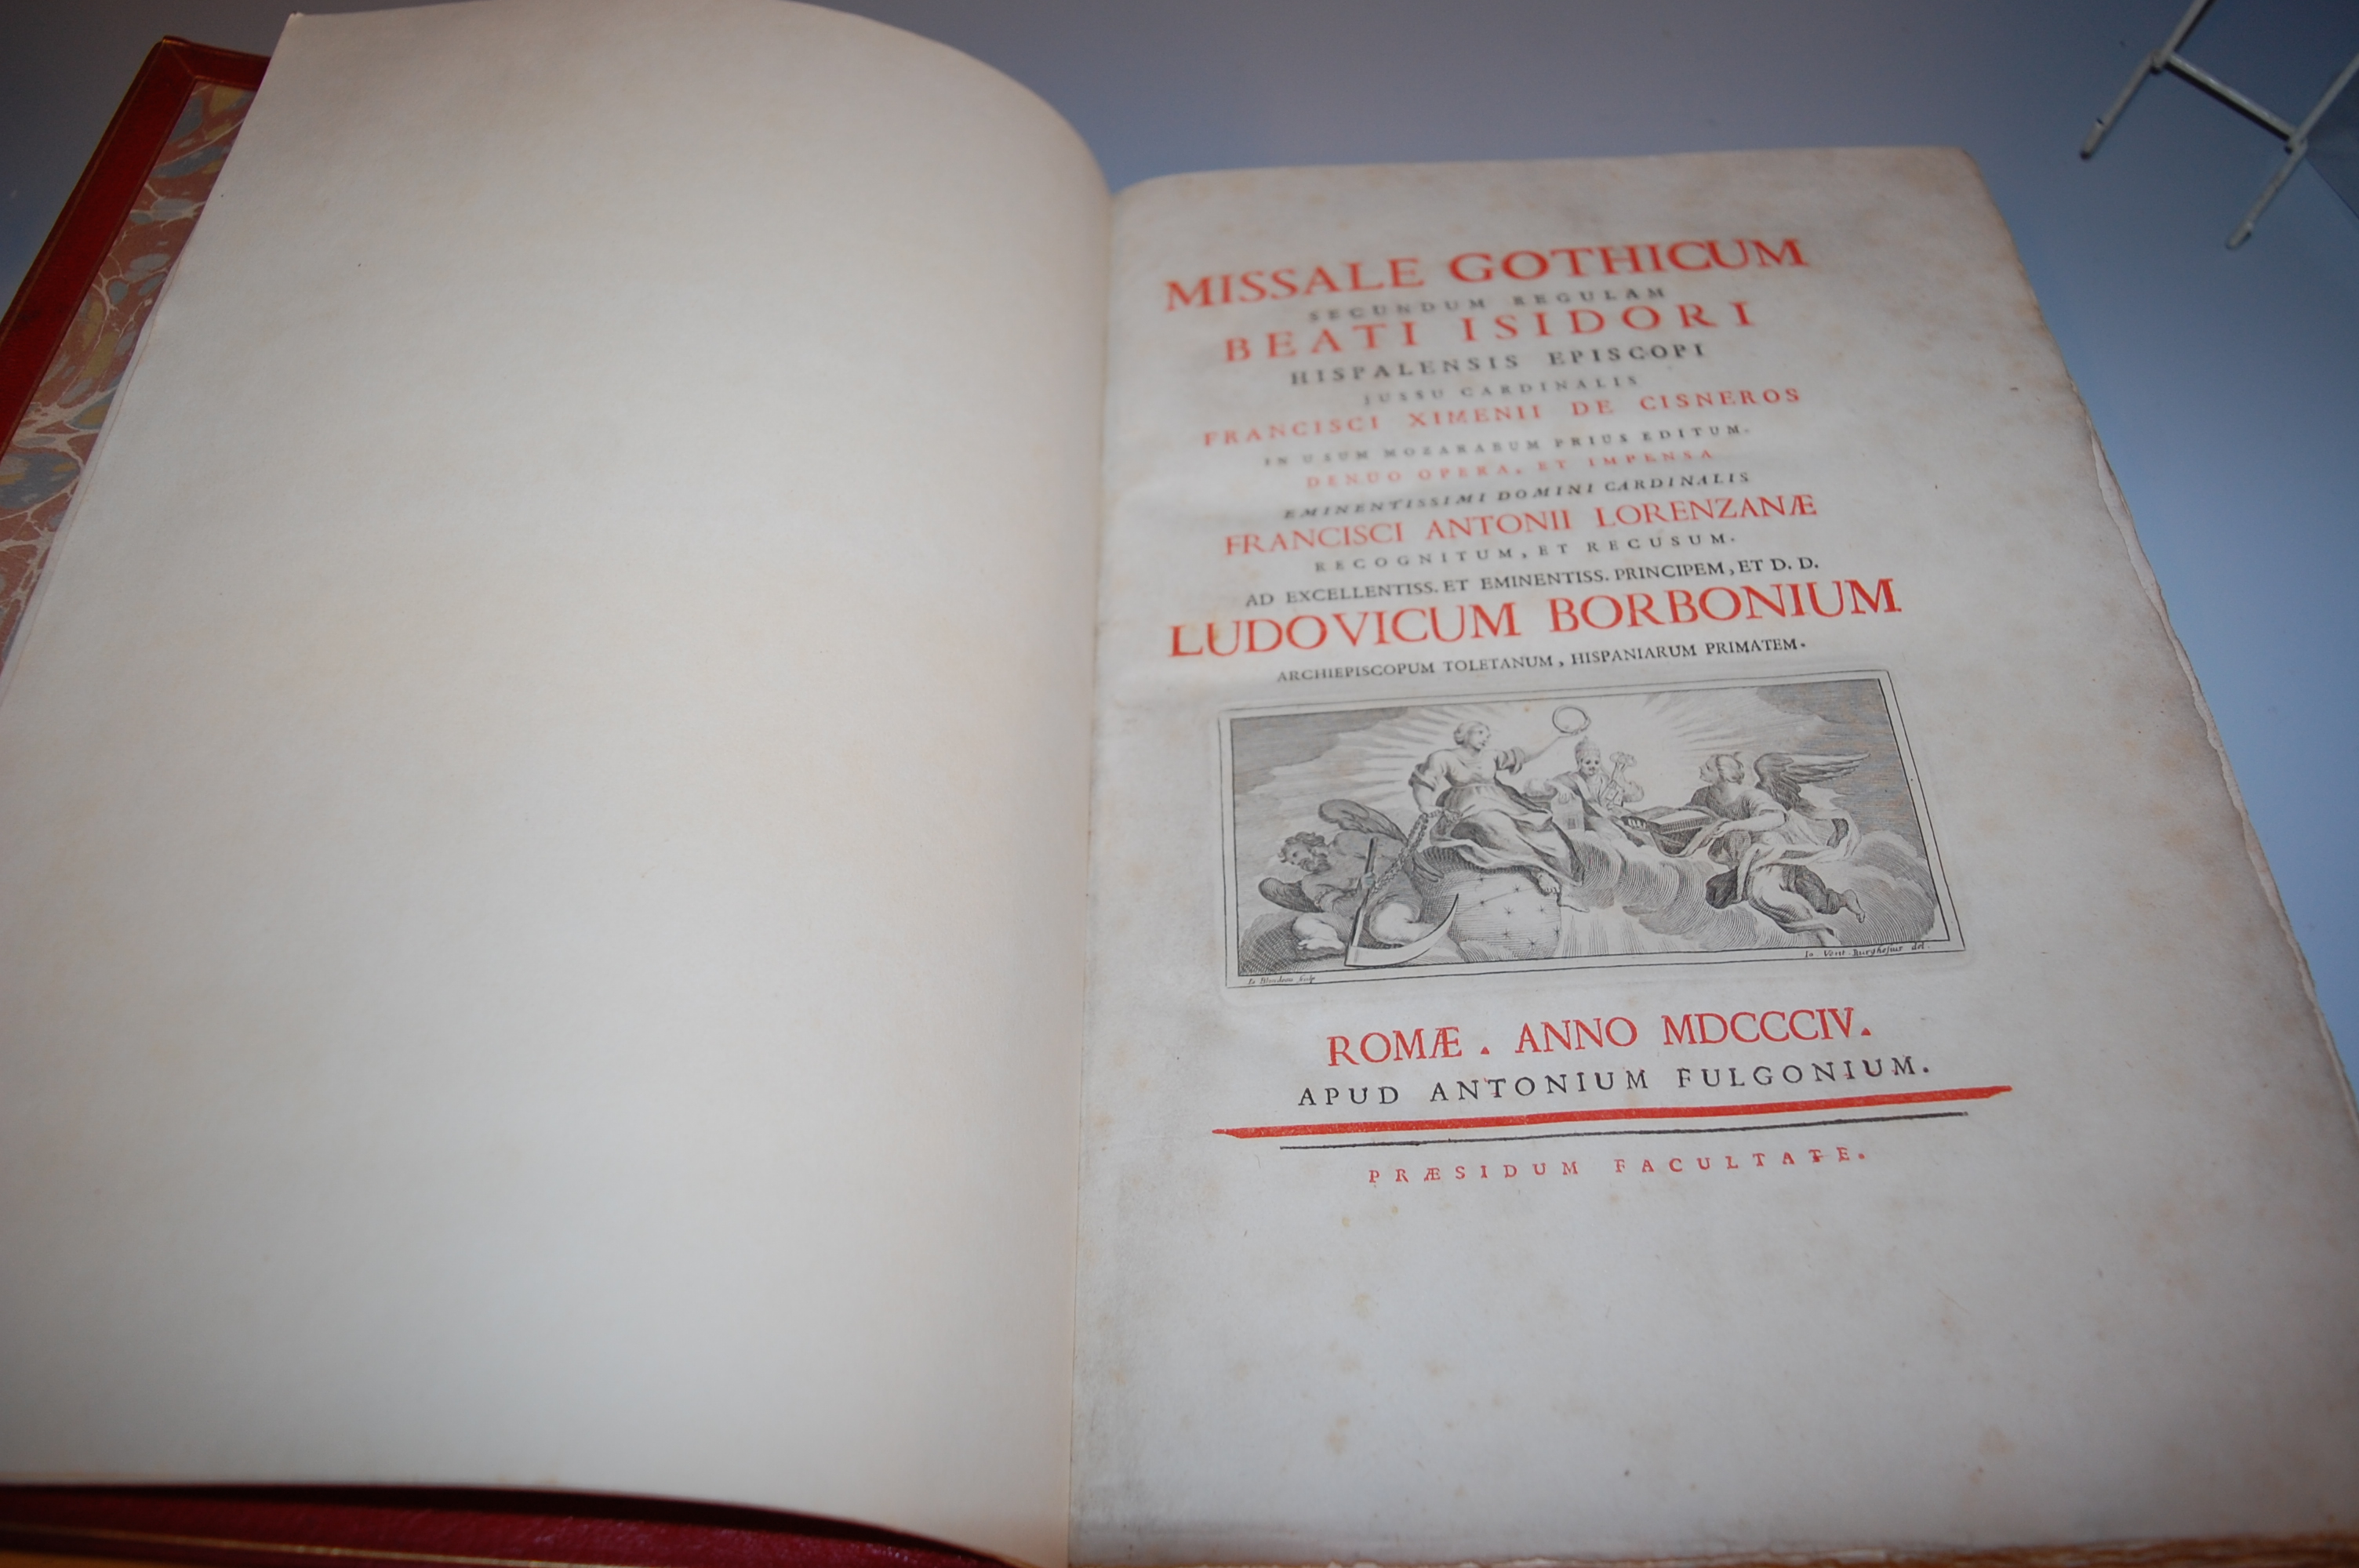 Missale Gothicum secundam regulam Francisci Ximenii de Cisneros, Ludovicum Barbonium, Rome 1804, - Image 2 of 5